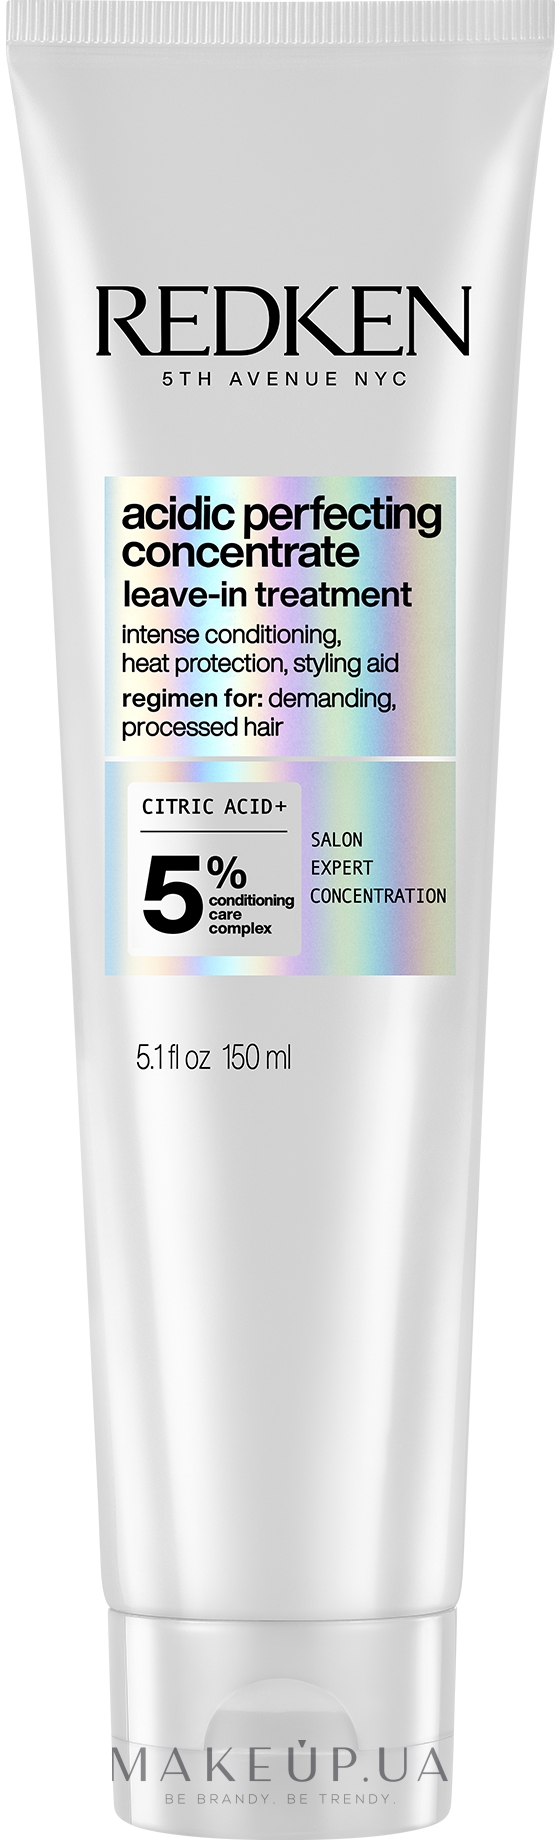 Redken Acidic Bonding Concentrate Leave-in Treatment - Термозащитный крем для интенсивного ухода за химически поврежденными волосами: купить по лучшей цене в Украине | Makeup.ua